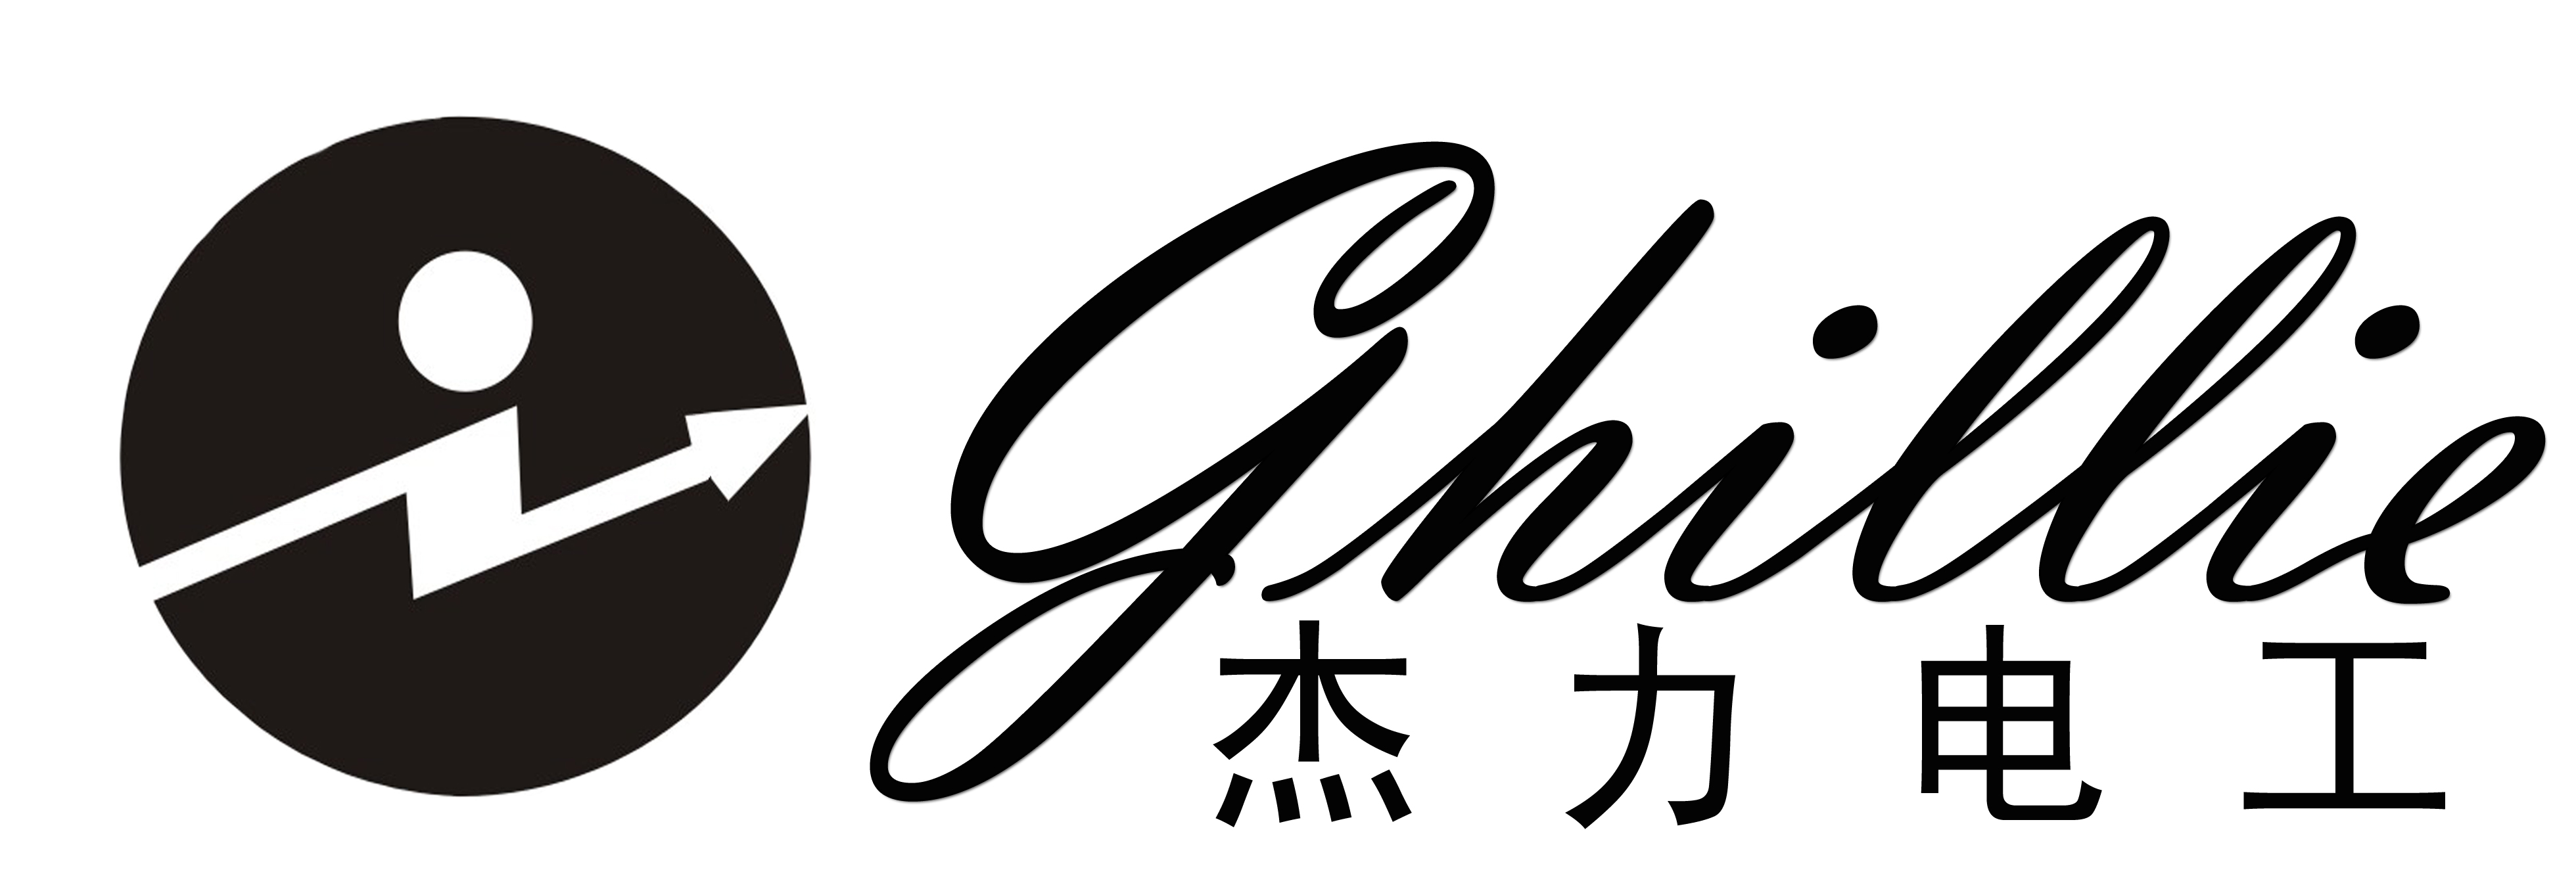 杰力電工的logo